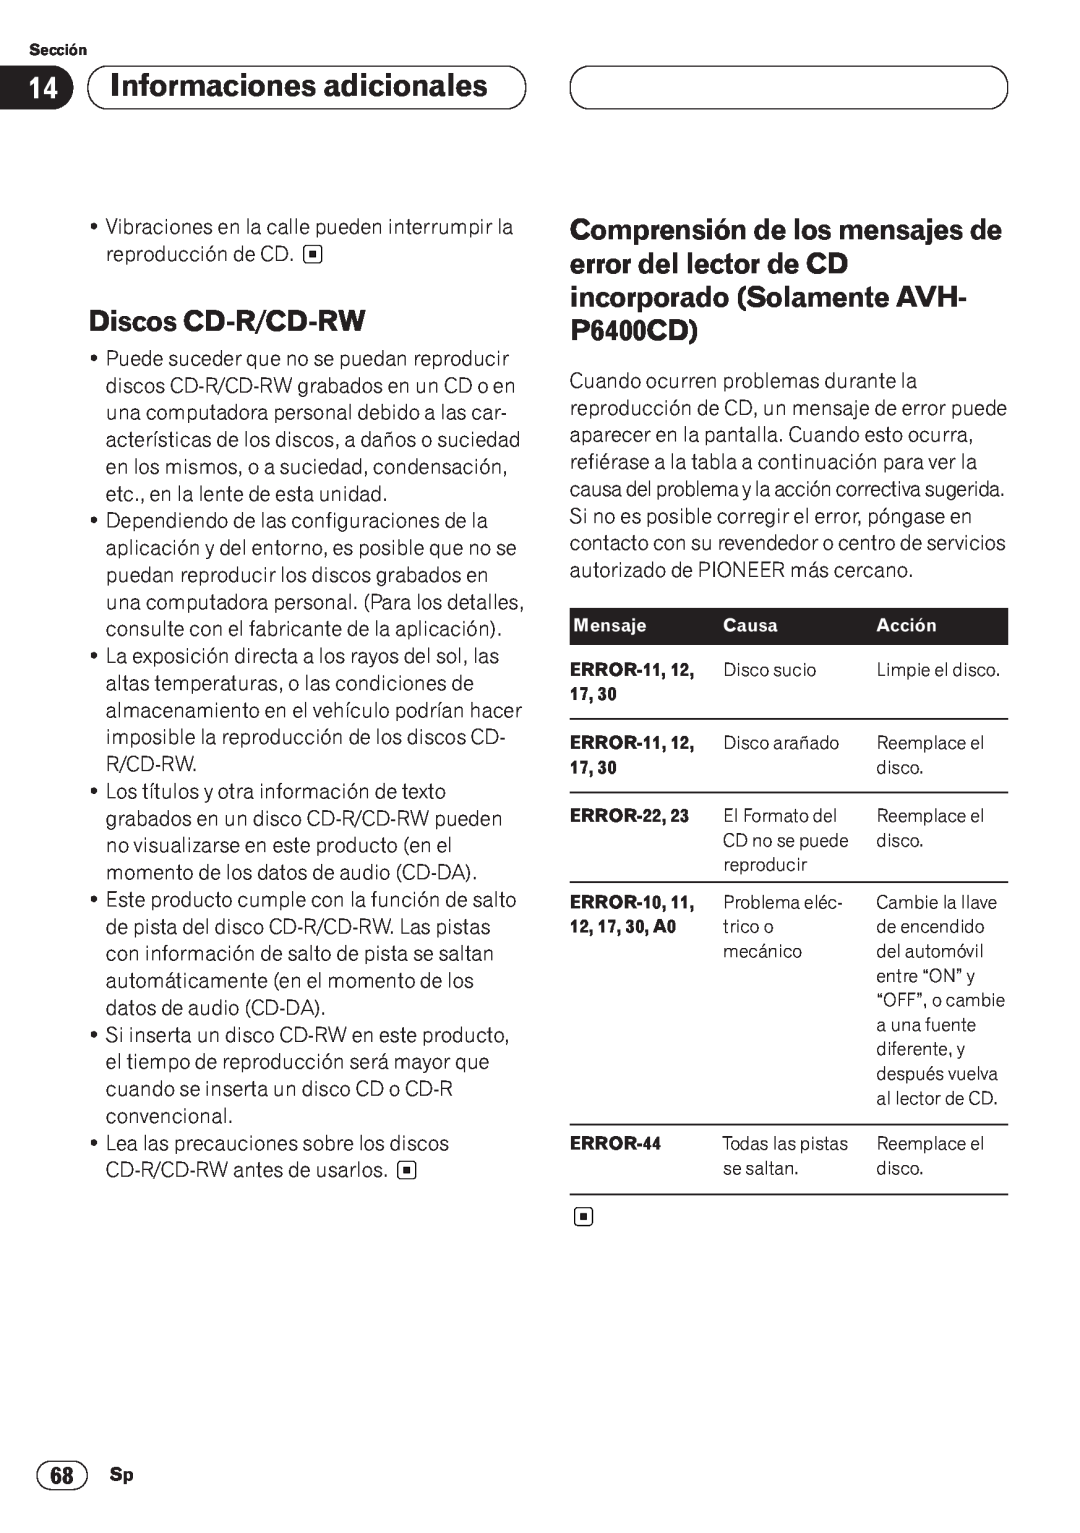 Pioneer AVH-P6400CD operation manual Informaciones adicionales, Discos CD-R/CD-RW 